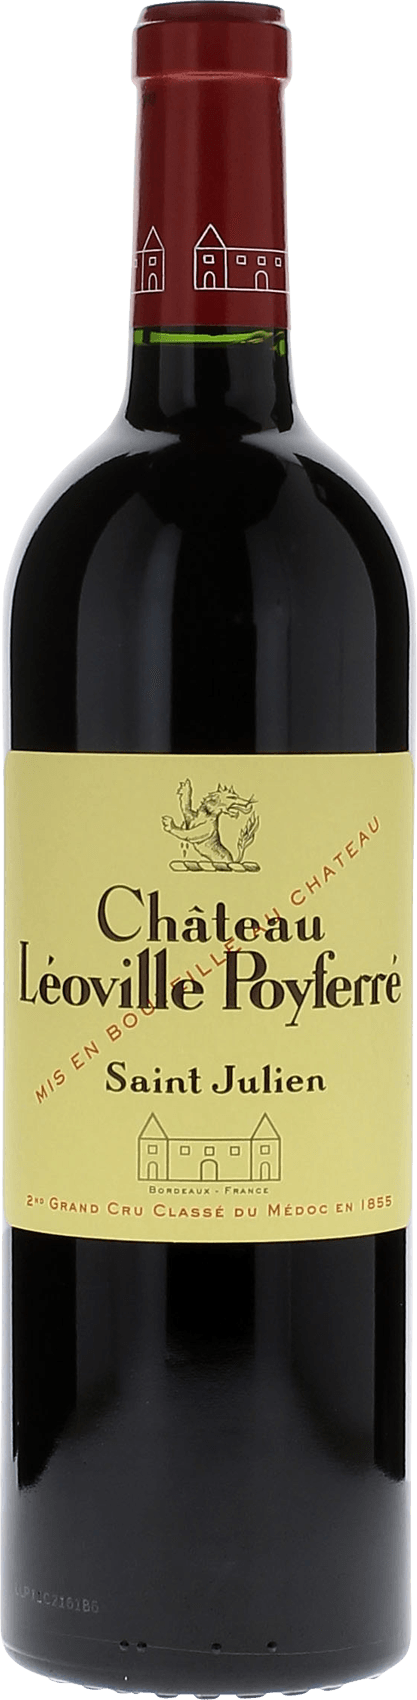 Leoville poyferre 2015 2me Grand cru class Saint-Julien, Bordeaux rouge